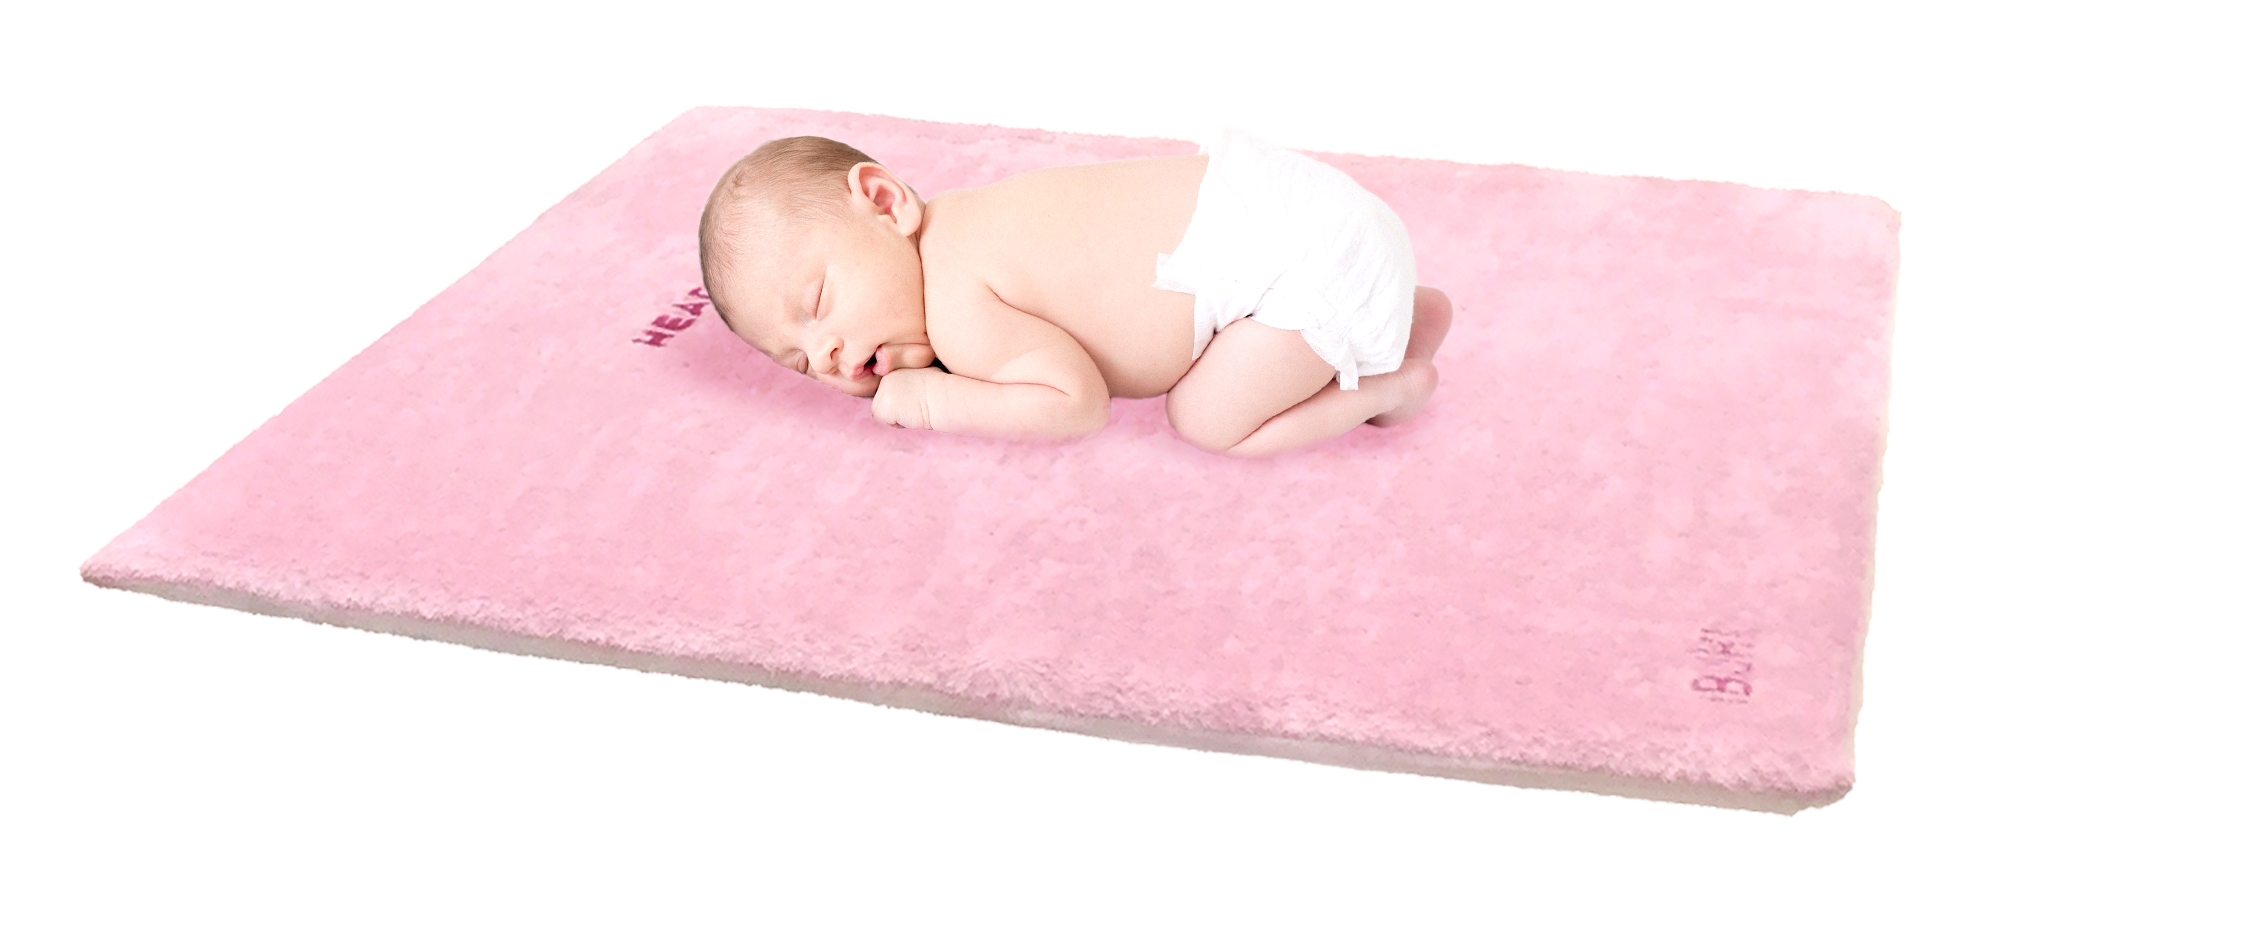 予約販売受付中 赤ちゃんが寝返りしても呼吸ができる 楽呼吸 Ibukiベビーマット 株式会社リキッド デザイン システムズのプレスリリース